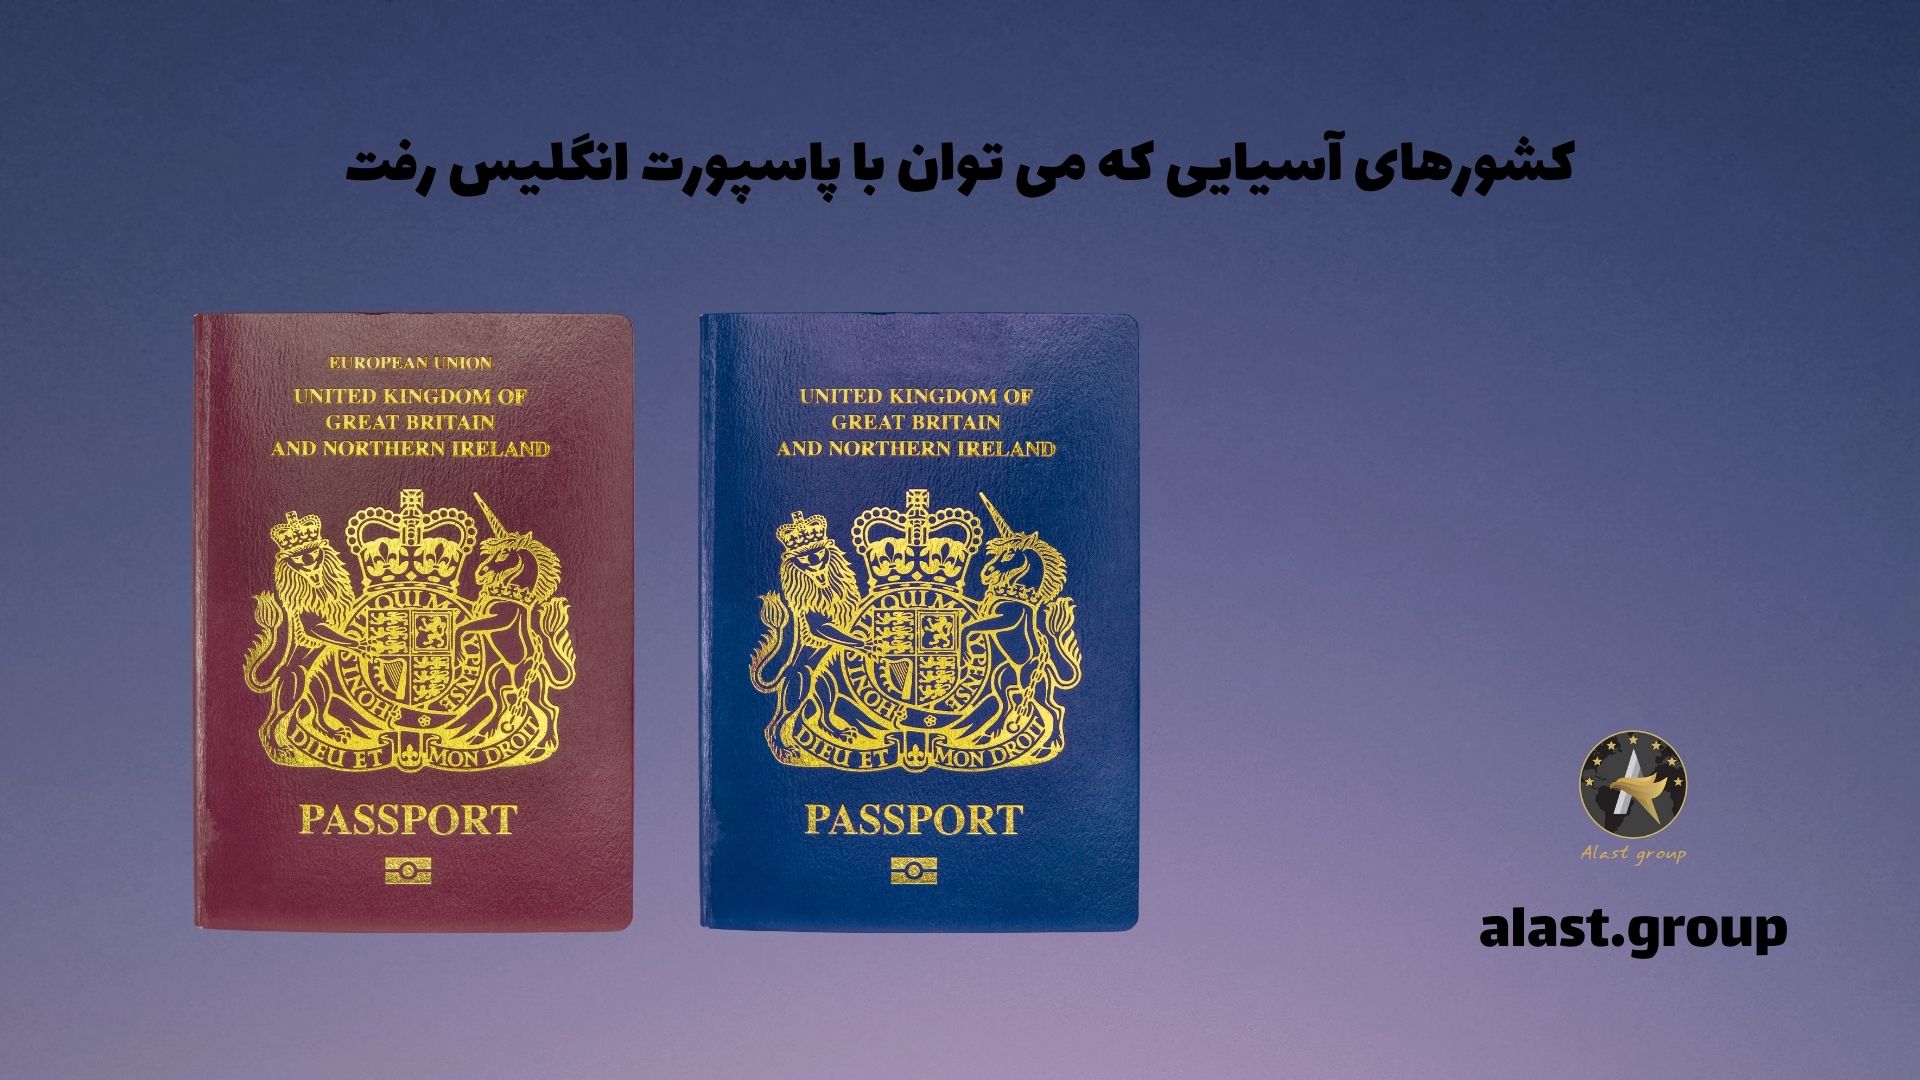 کشورهای آسیایی که می توان با پاسپورت انگلیس رفت